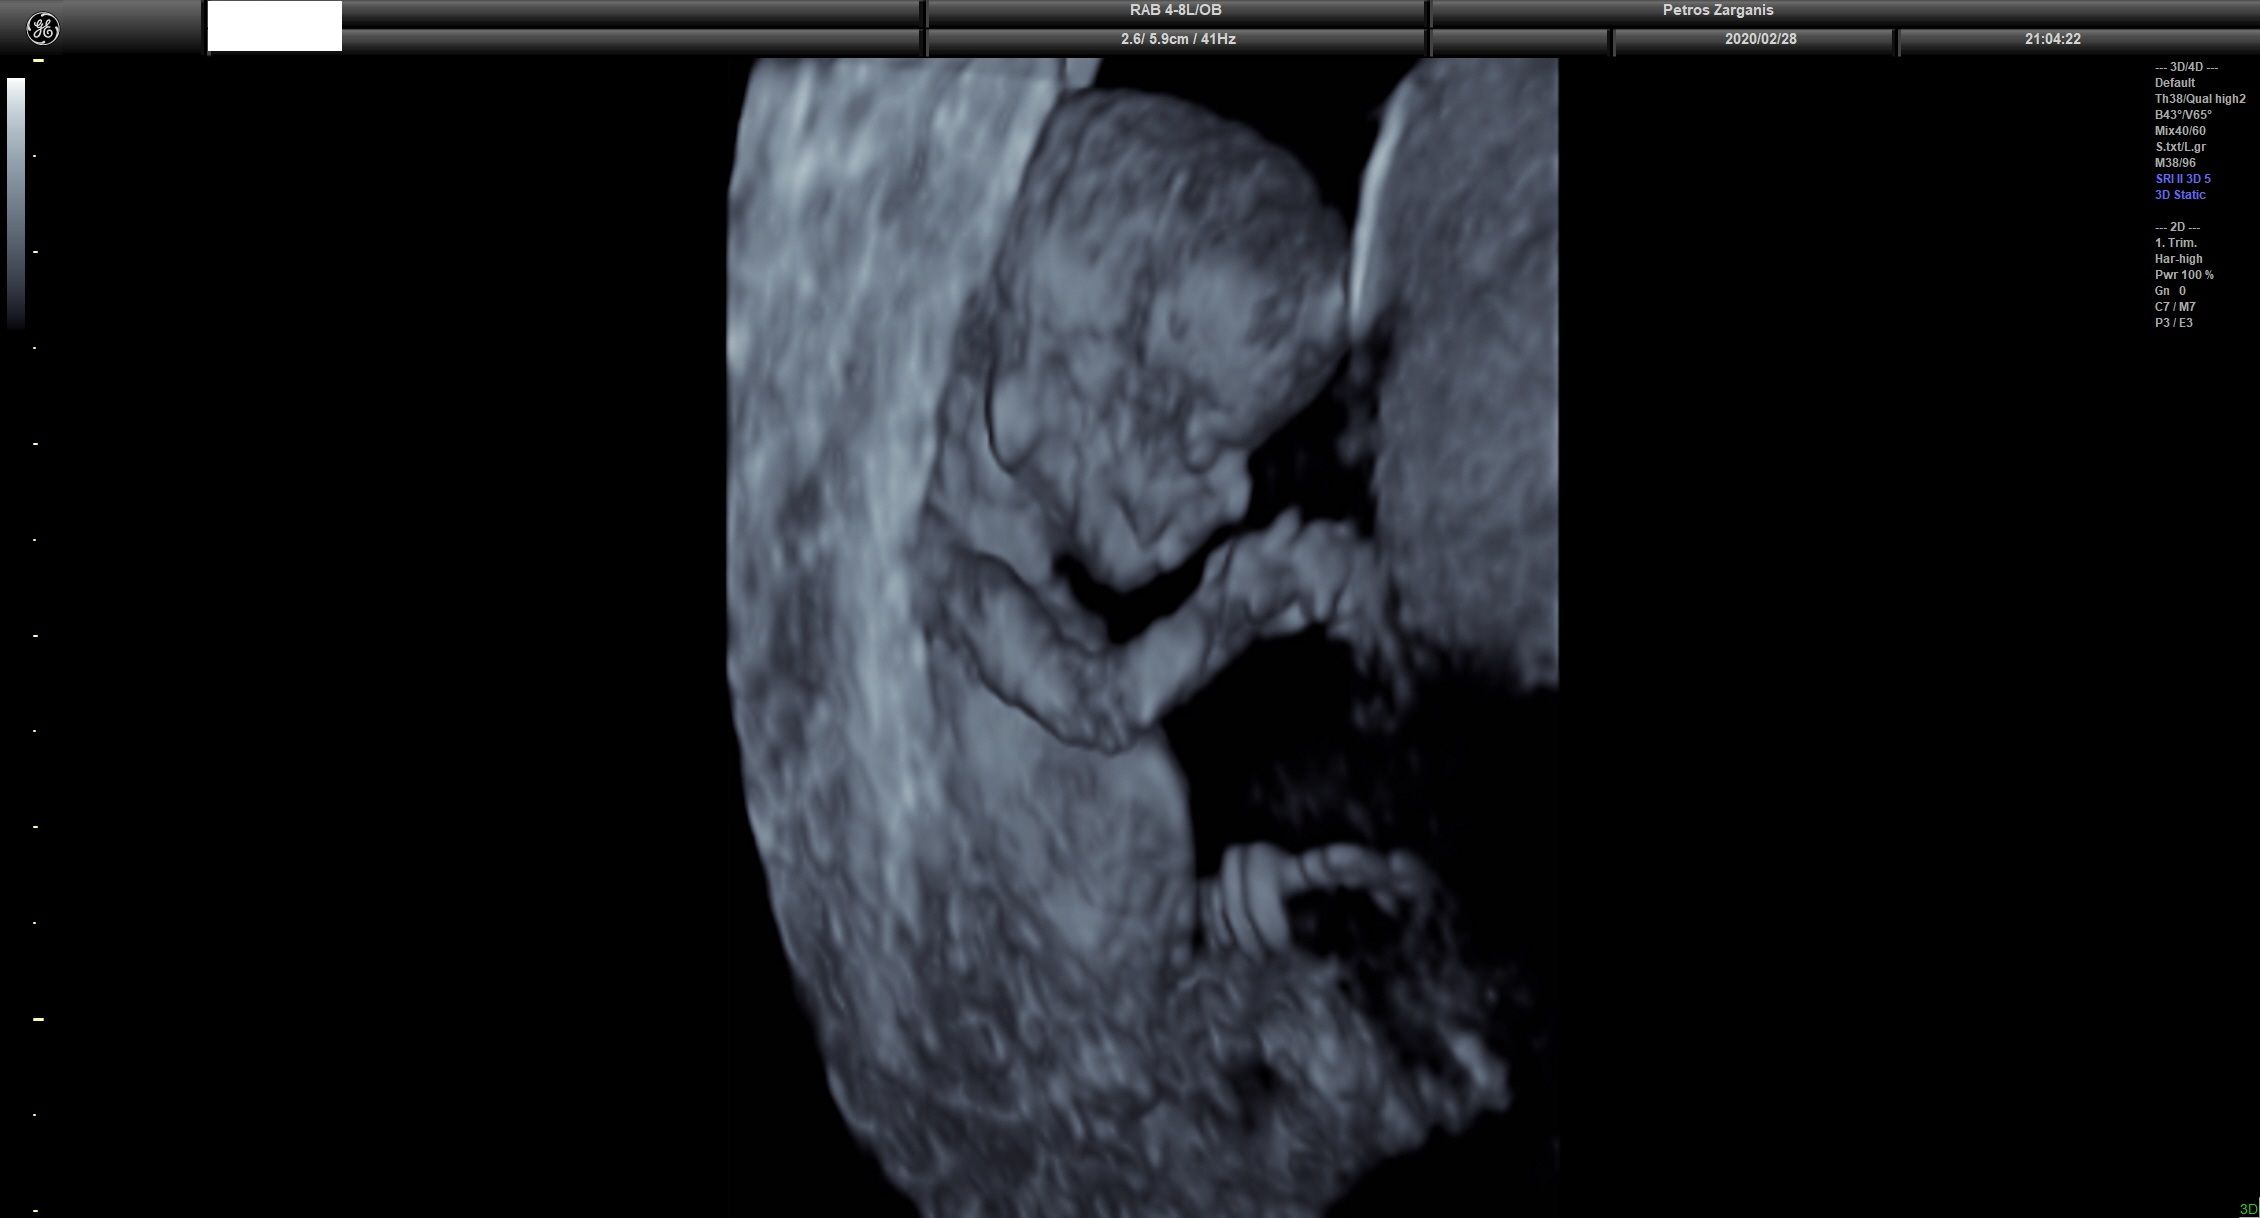 Εμβρυο 11 εβδομάδων +2 ημερών τρισδιάστατη απεικόνιση , σε εγκυμοσύνη με κολπική αιμόρροια και ευχάριστη εξέλιξη [2]